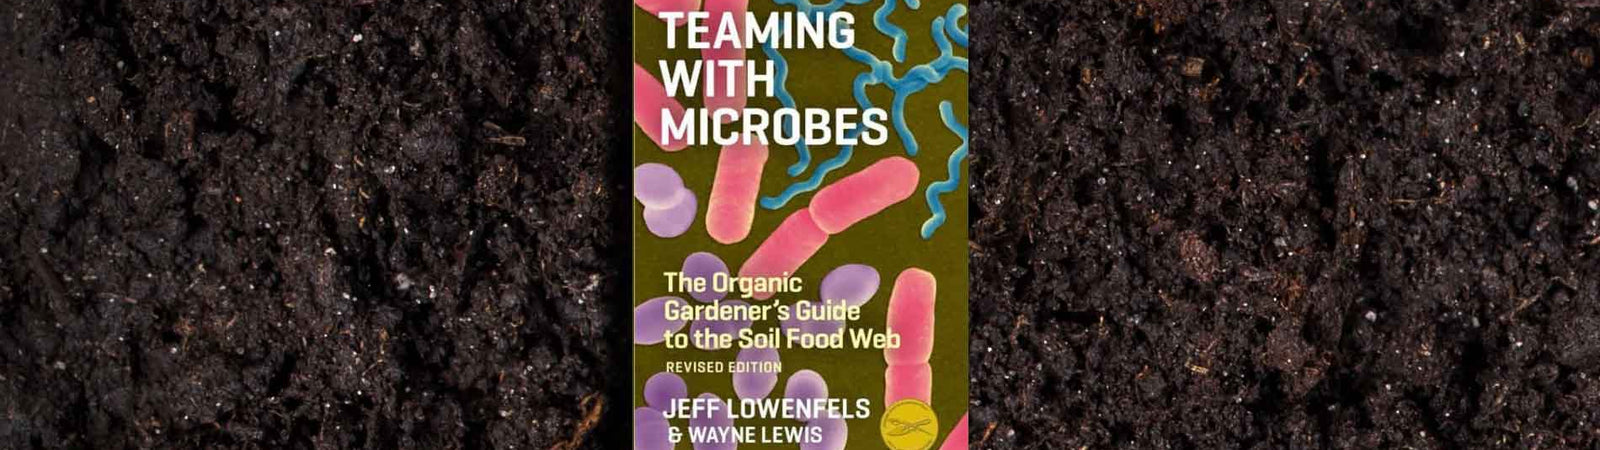 teaming with microbes Jeff Lowenfels Wayne Lewis